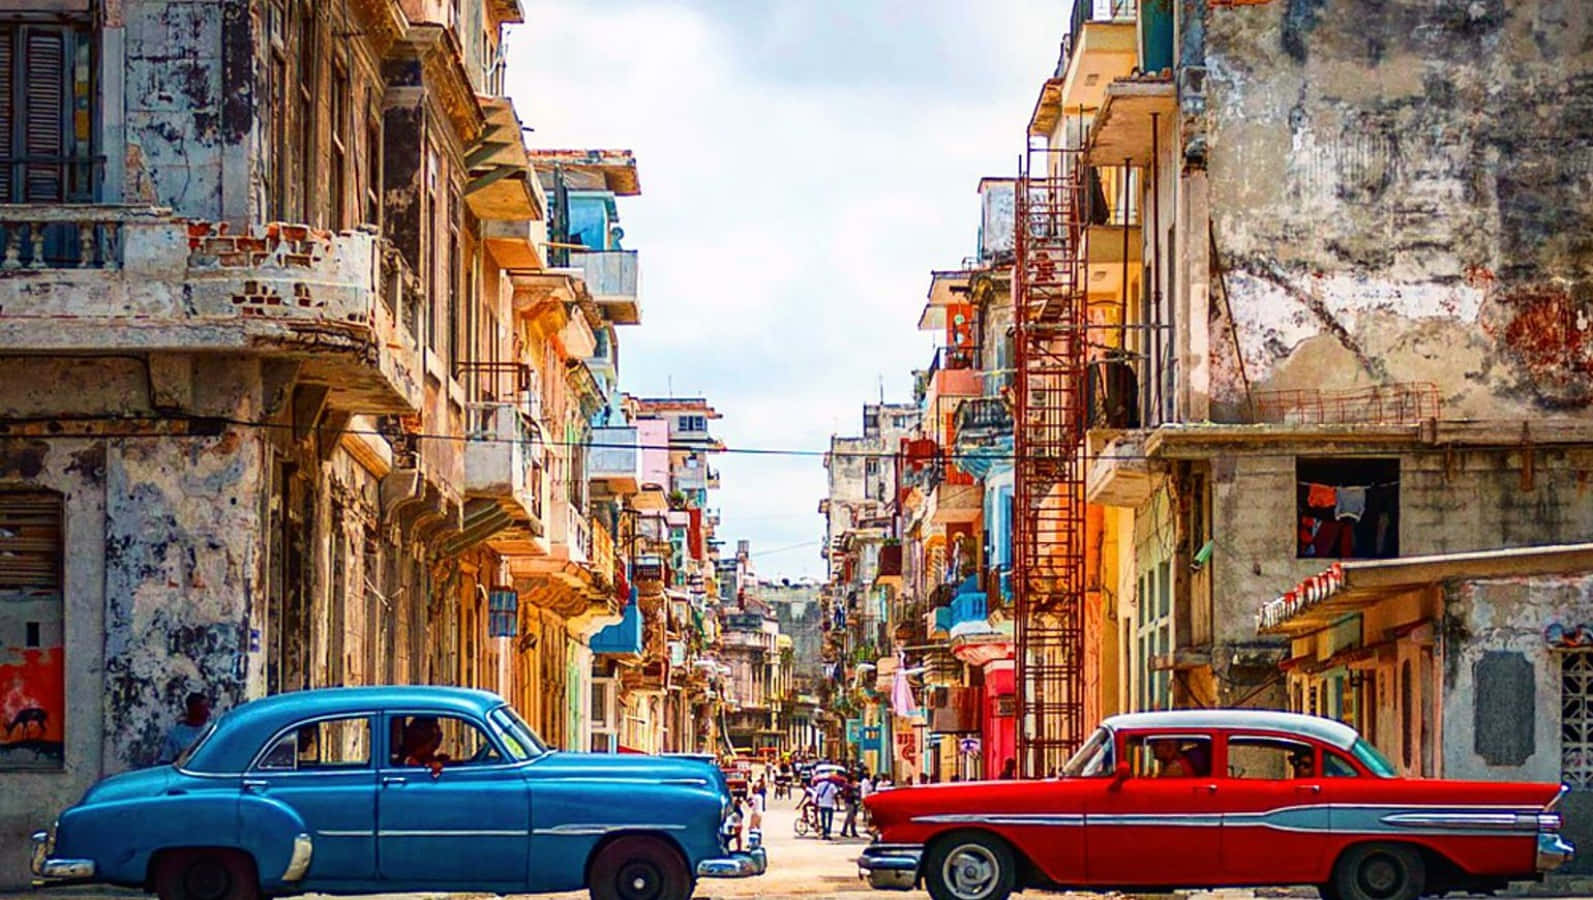 Enlivlig Gatubild I Gamla Havana, Kuba